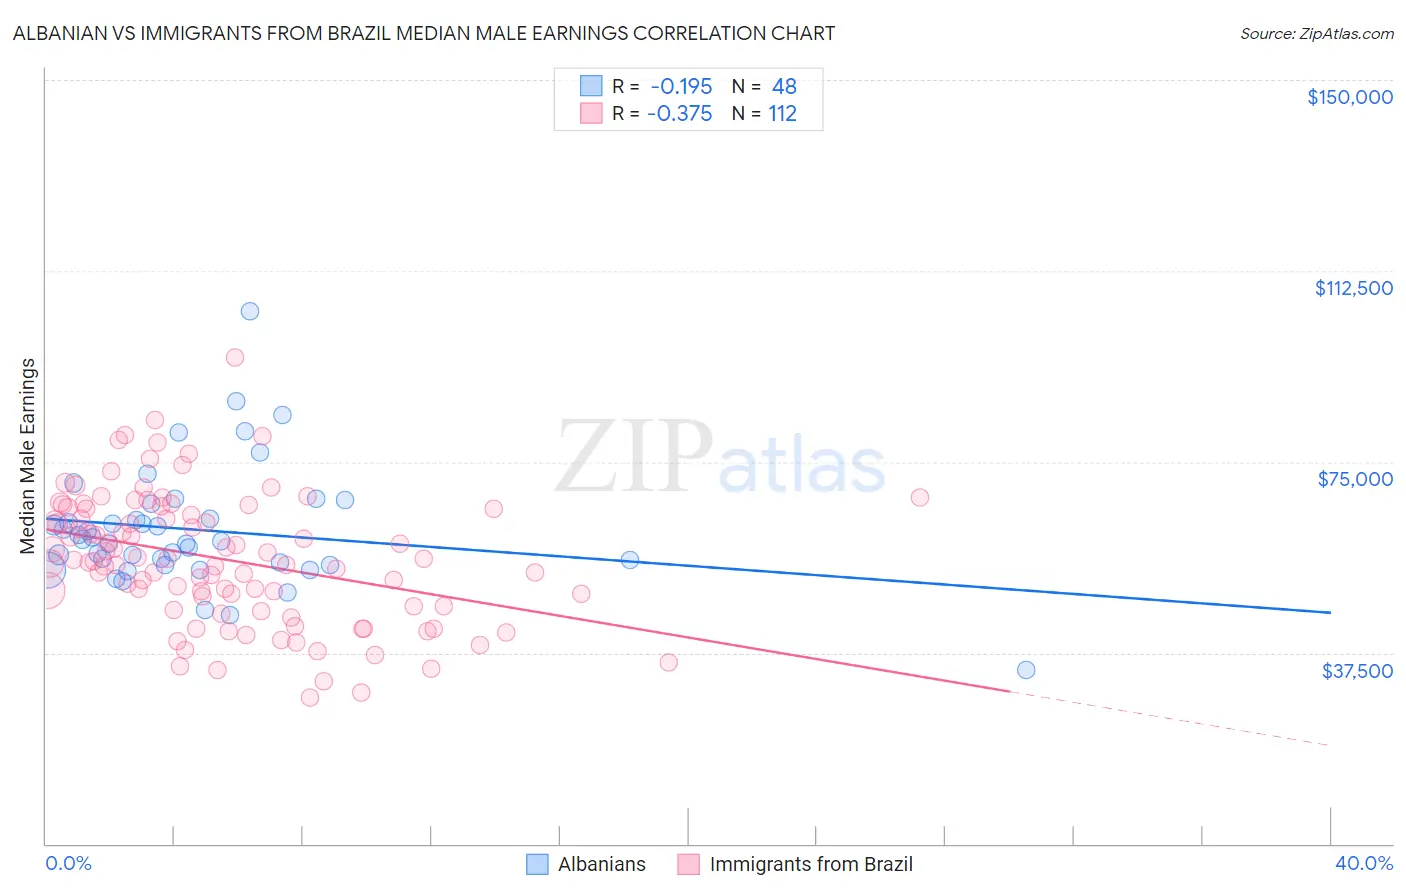 Albanian vs Immigrants from Brazil Median Male Earnings